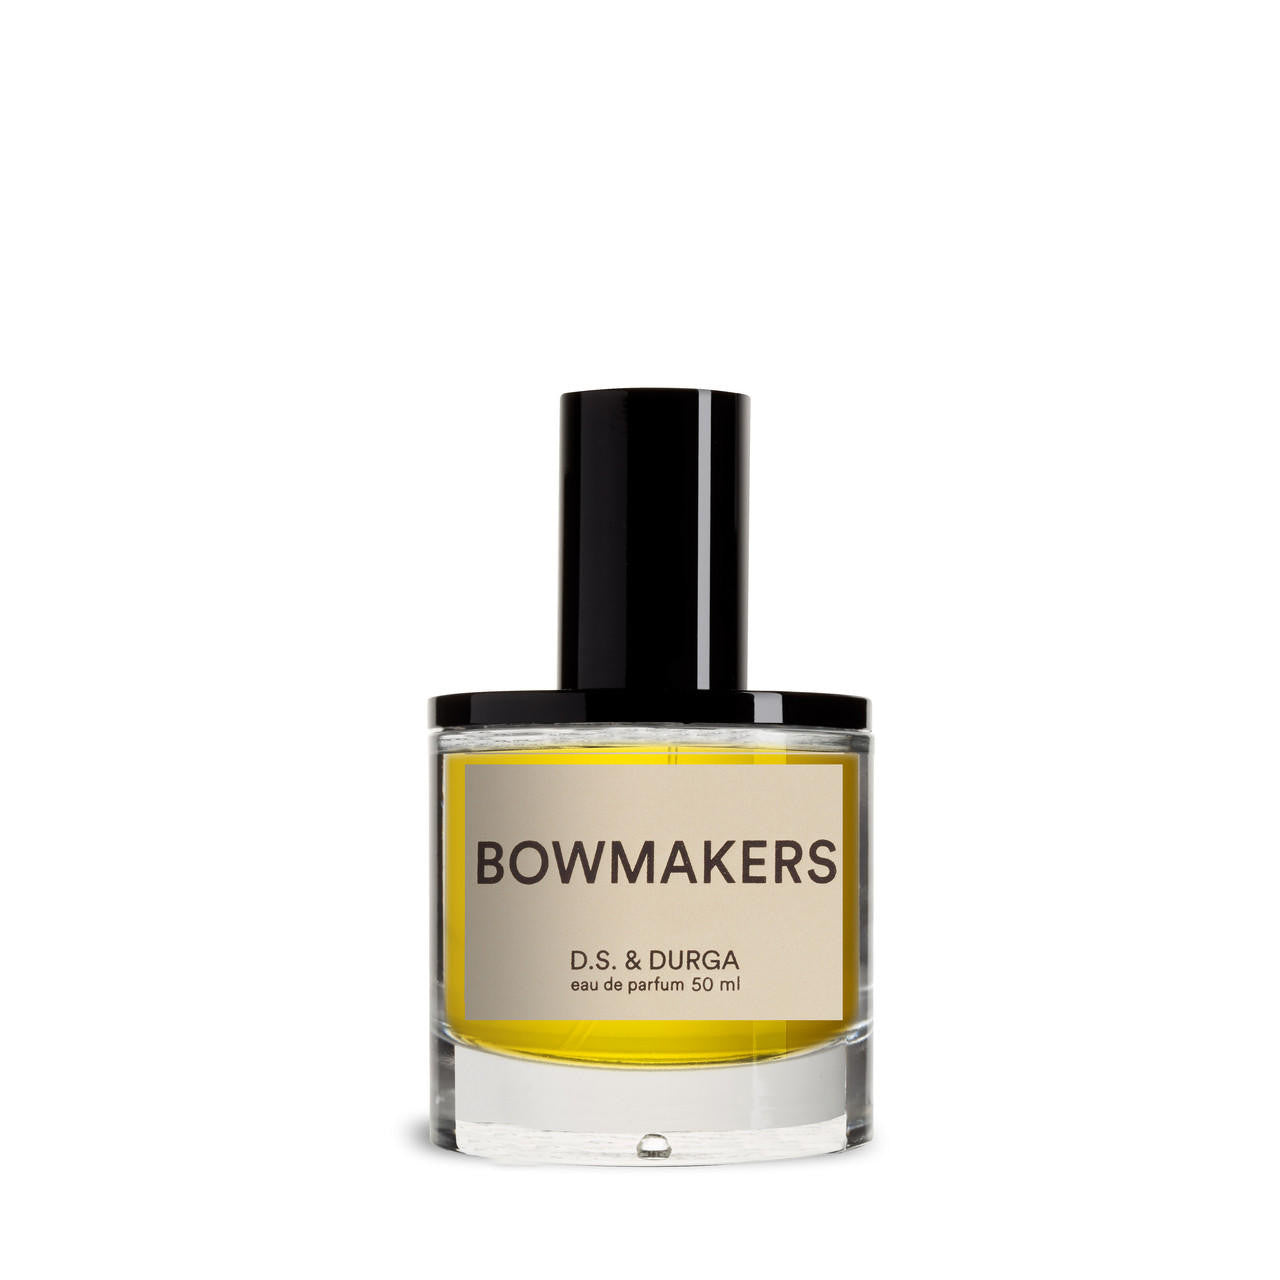 D.S. and DURGA D.S. & DURGA Bowmakers Eau de Parfum 